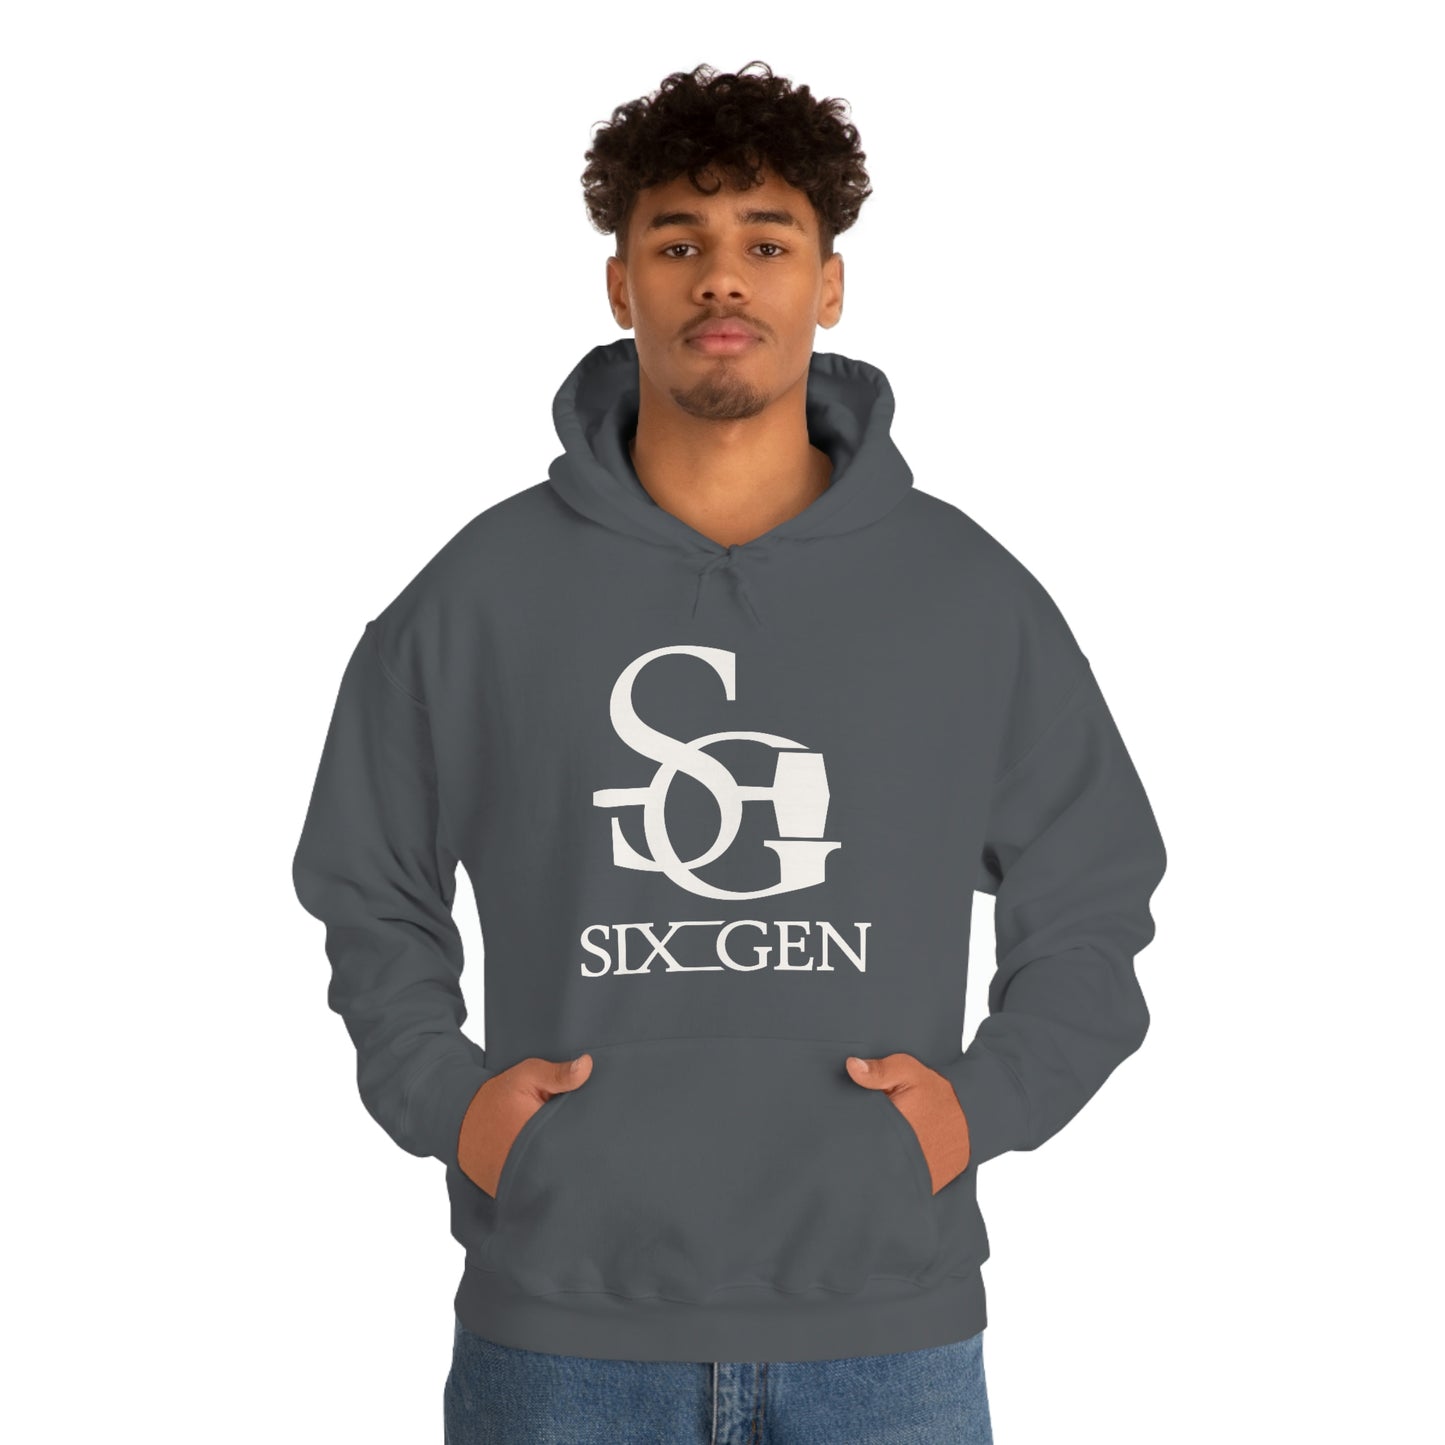 Six-Gen Forge logo Hooded Sweatshirt